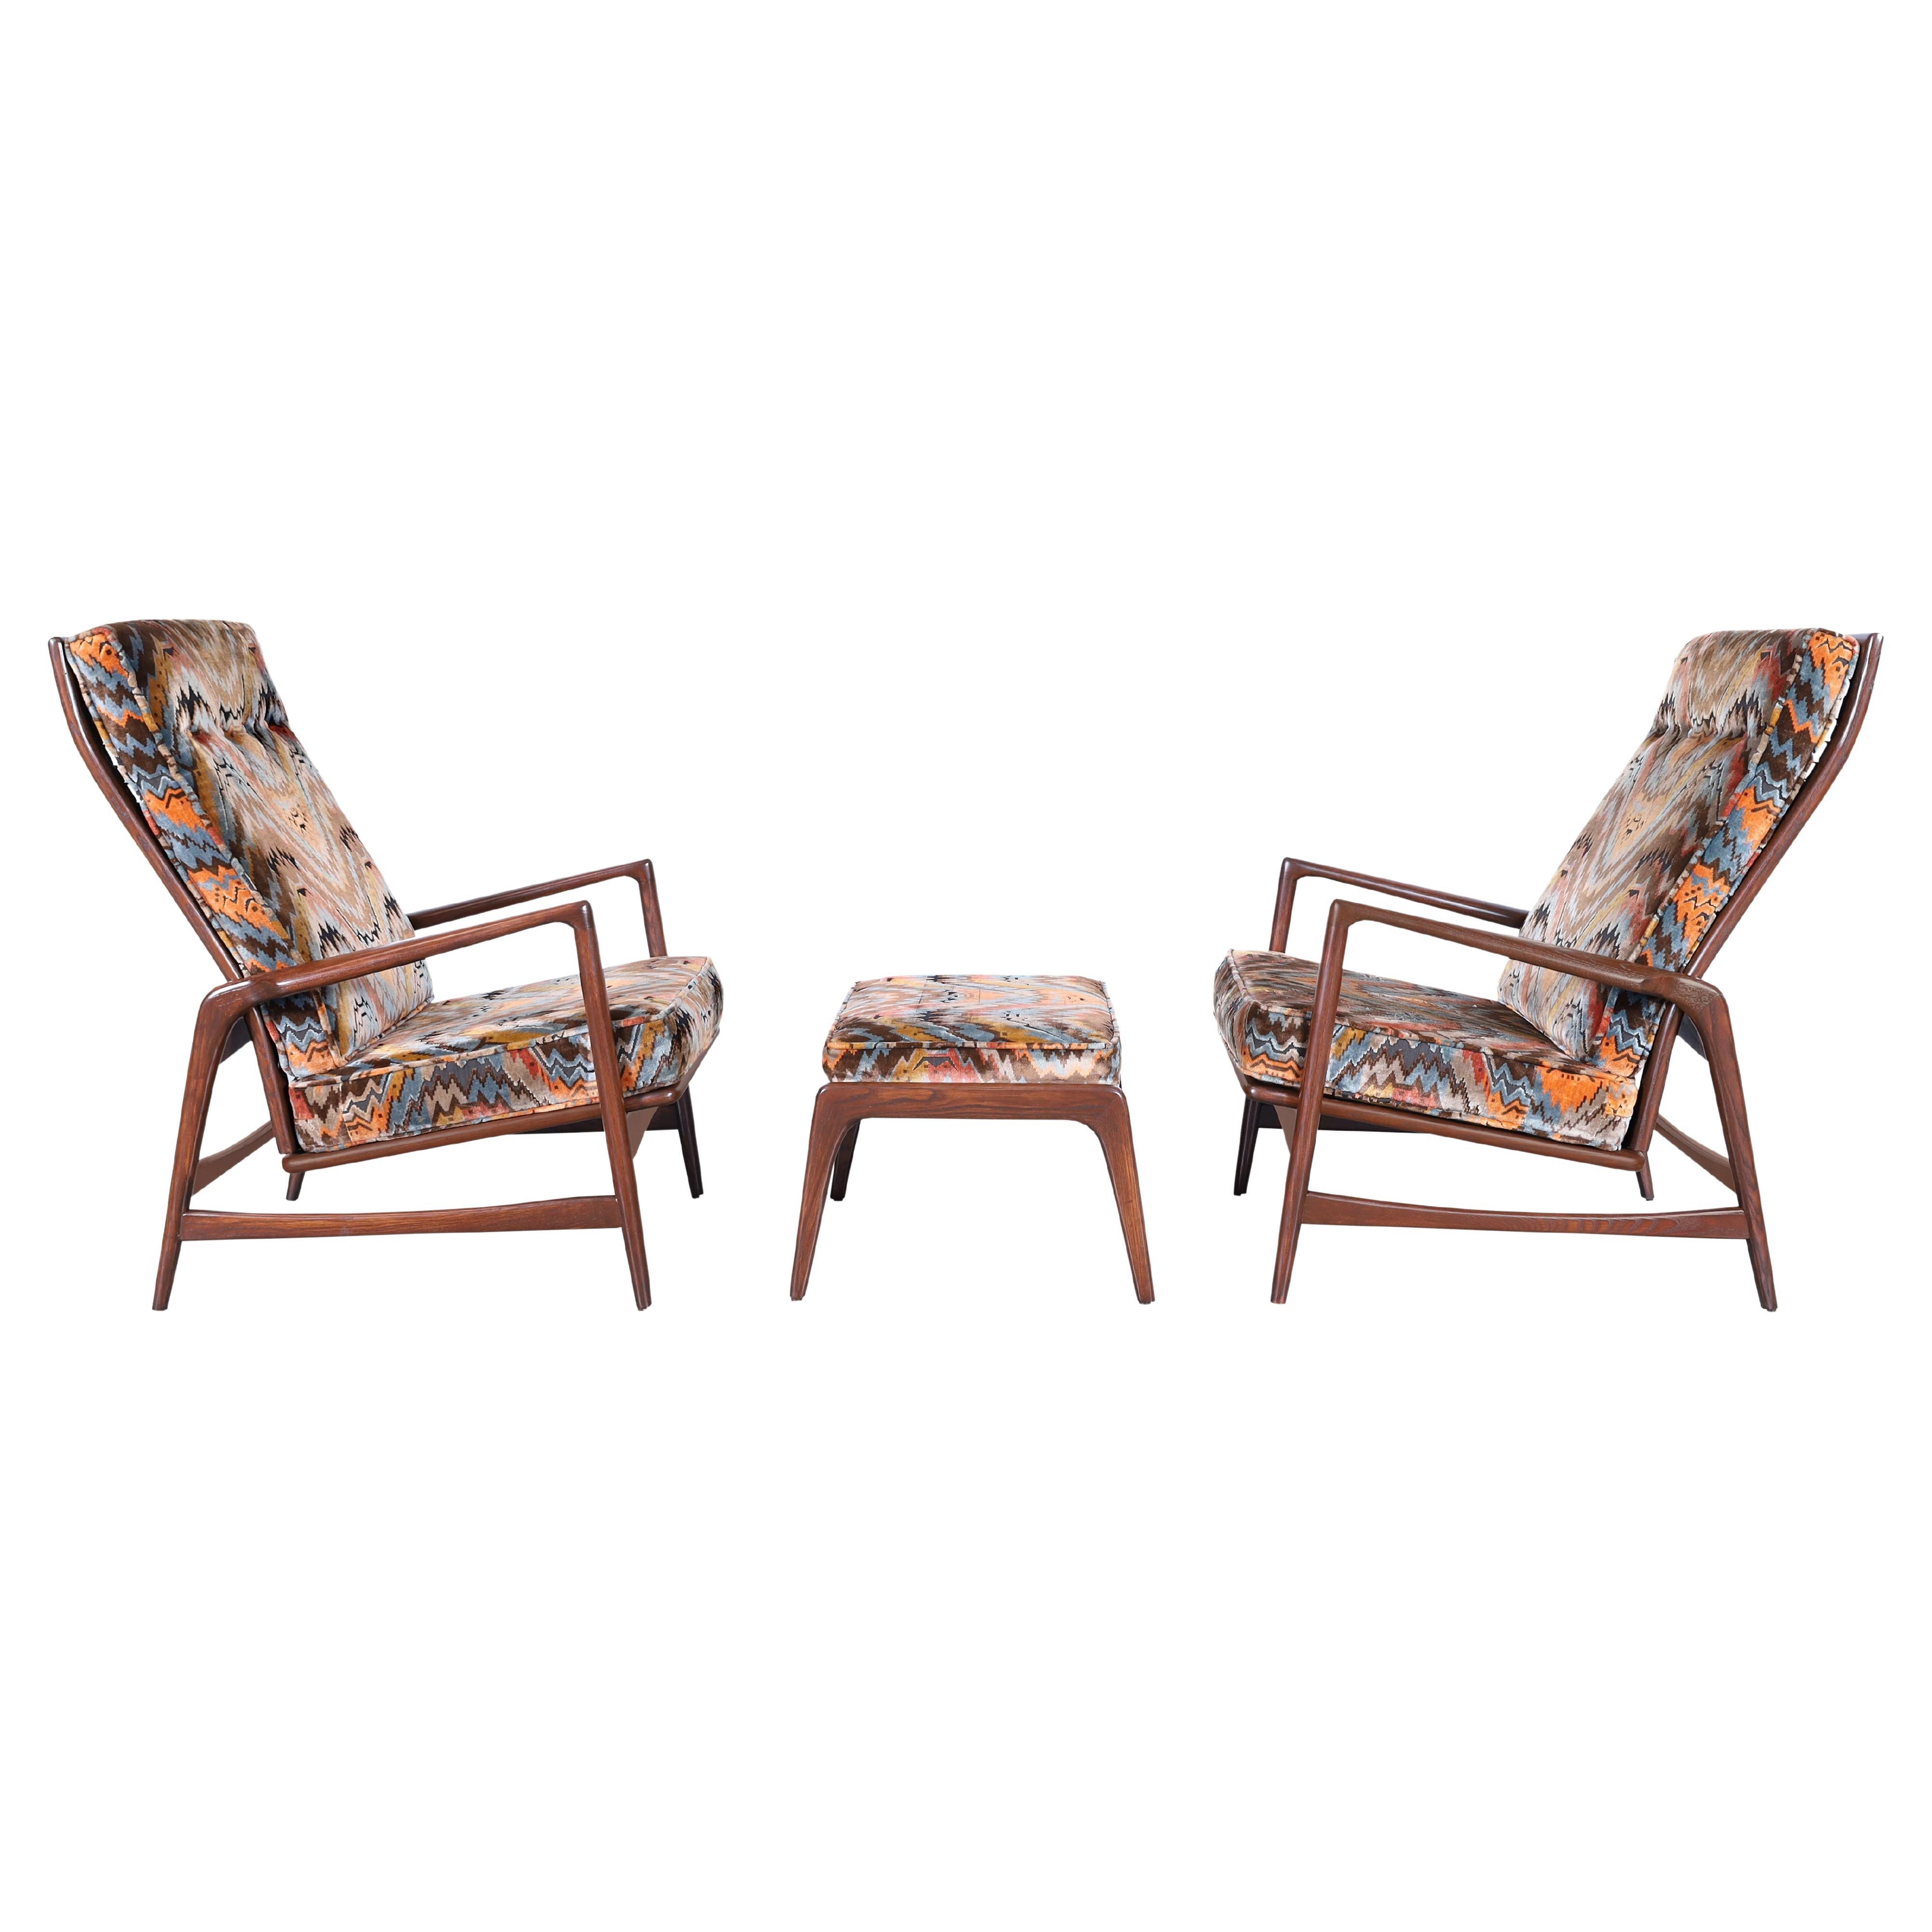 Danish Modern Walnut Reclining Lounge Chairs and Ottoman by Ib Kofod Larsen